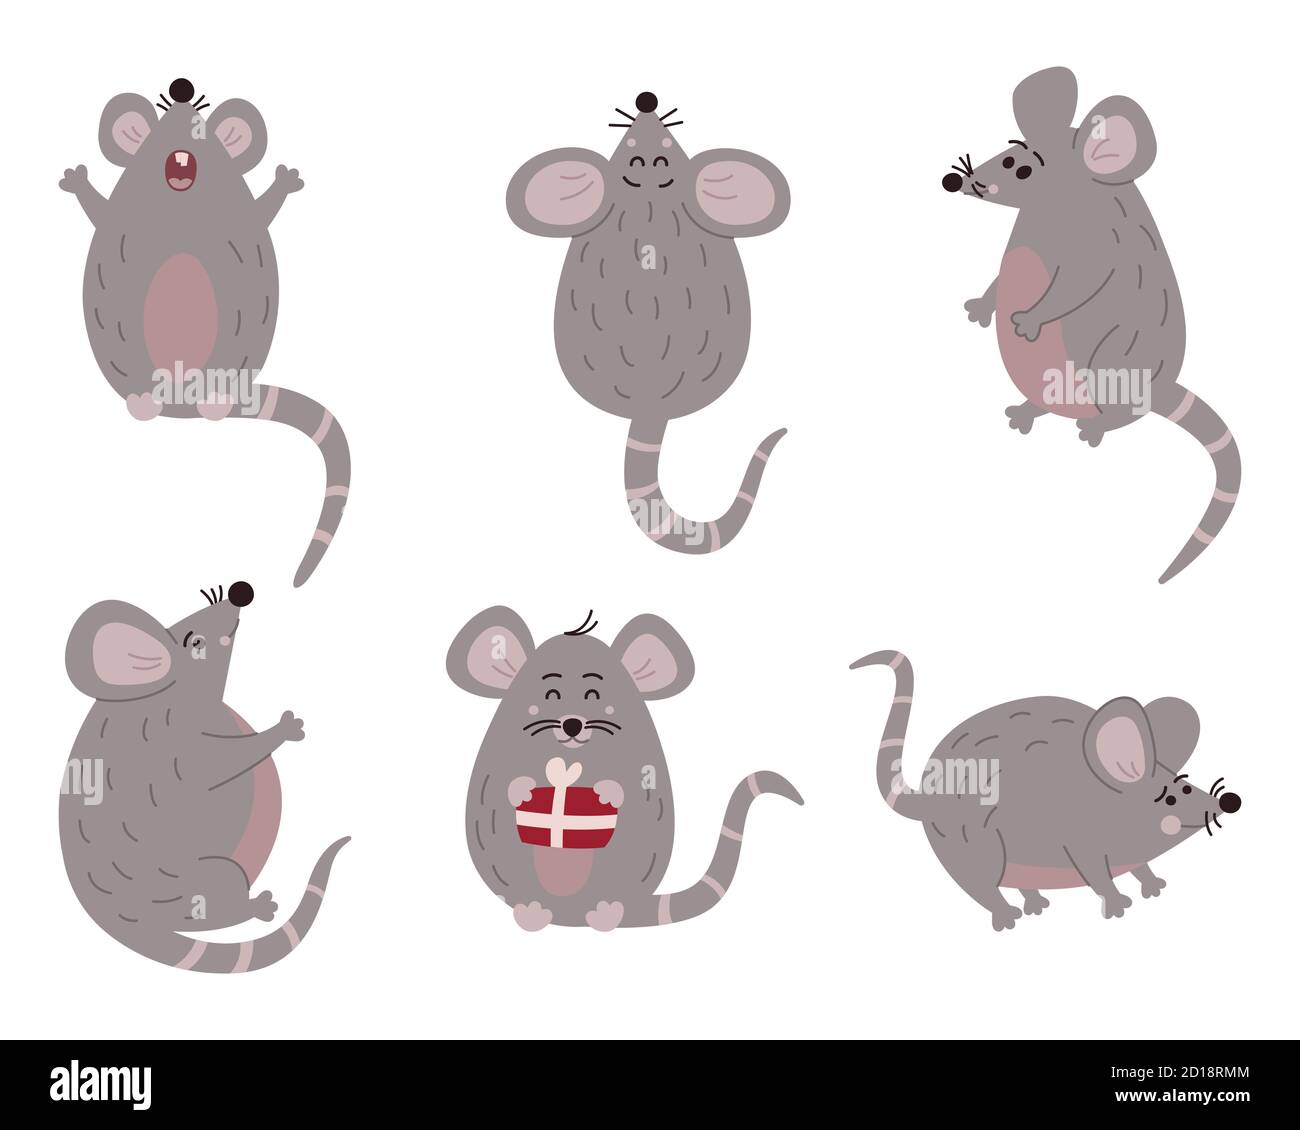 Nette Maus in verschiedenen Pose. Vektorgrafik Stockfoto